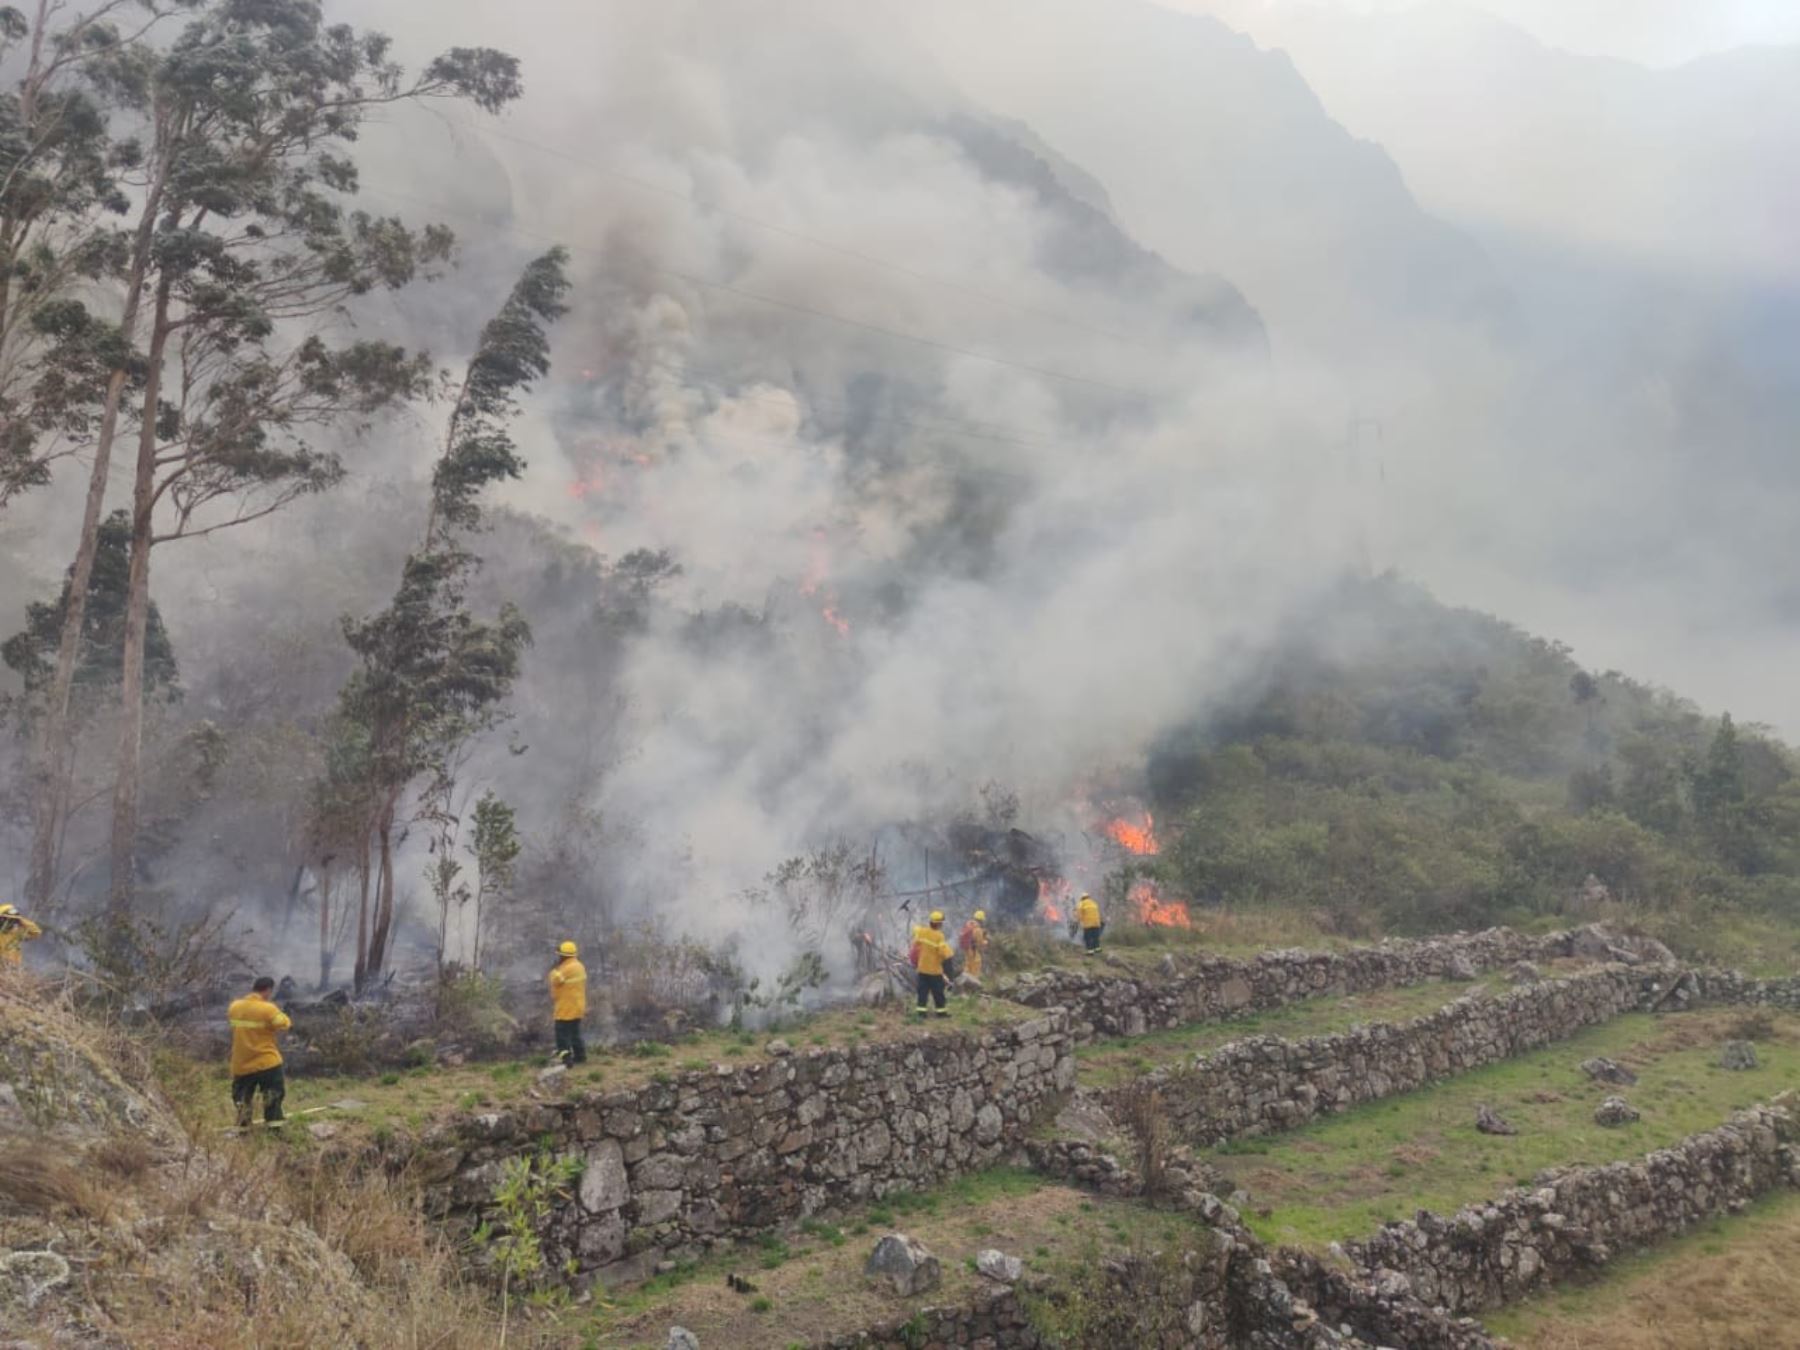 Alerta en santuario histórico de Machu Picchu, en Cusco, por incendio forestal que afecta zona del monumento Llamakancha, situado dentro del parque arqueológico.